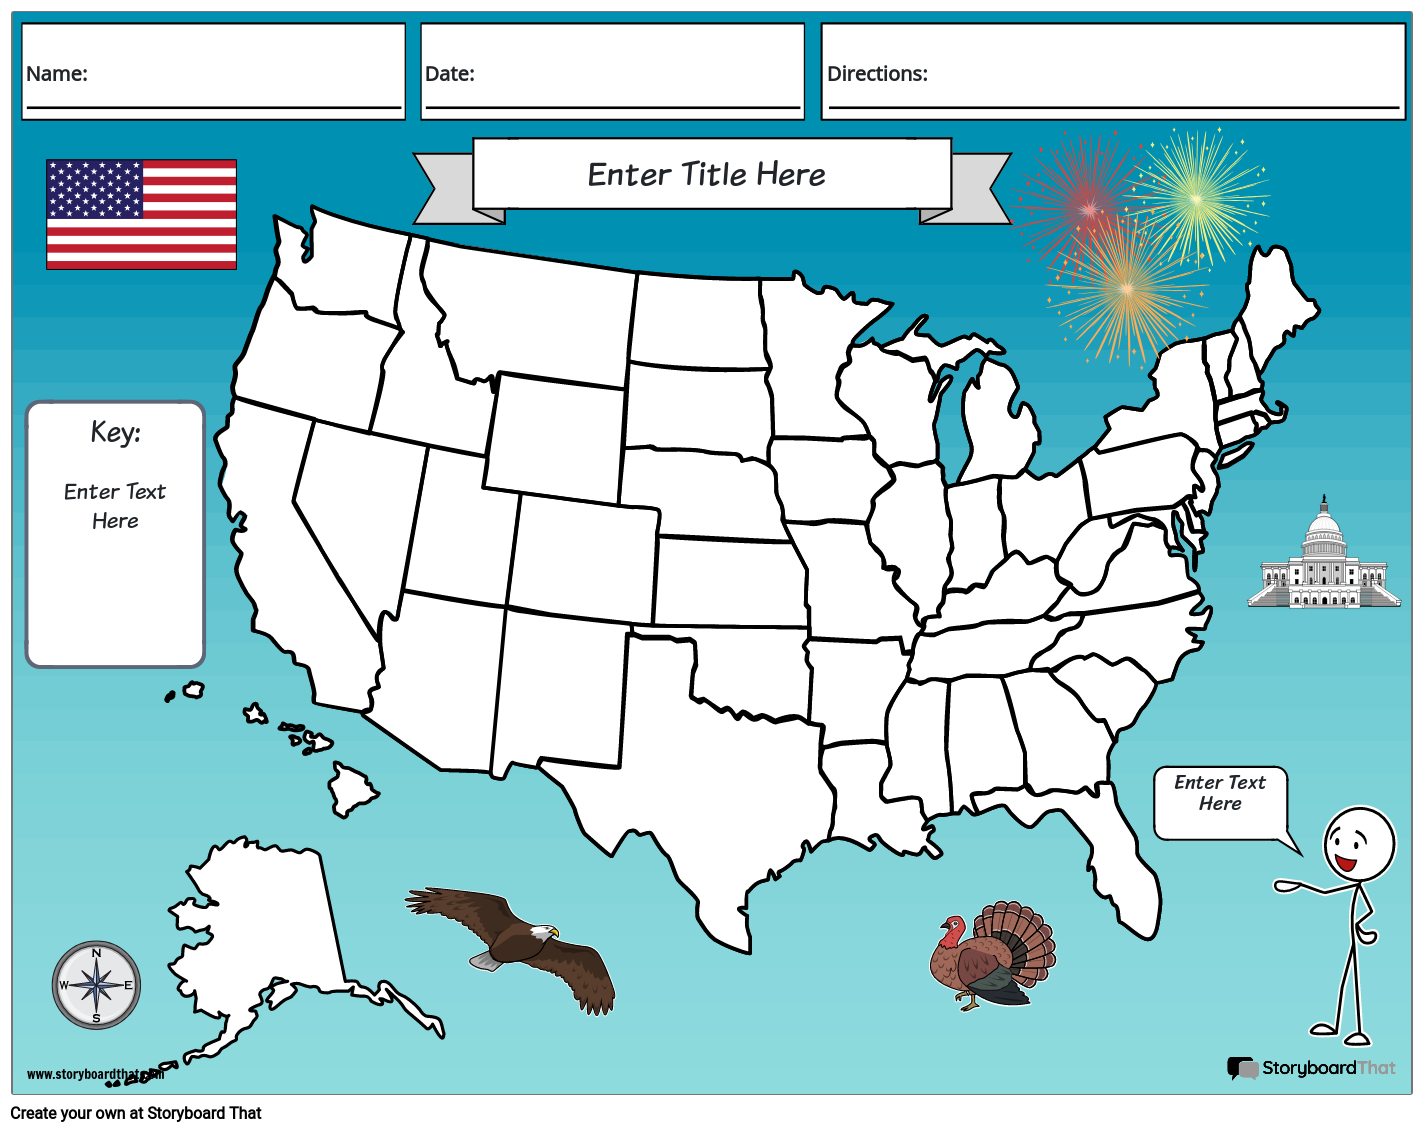 संयुक्त राज्य अमेरिका का नक्शा